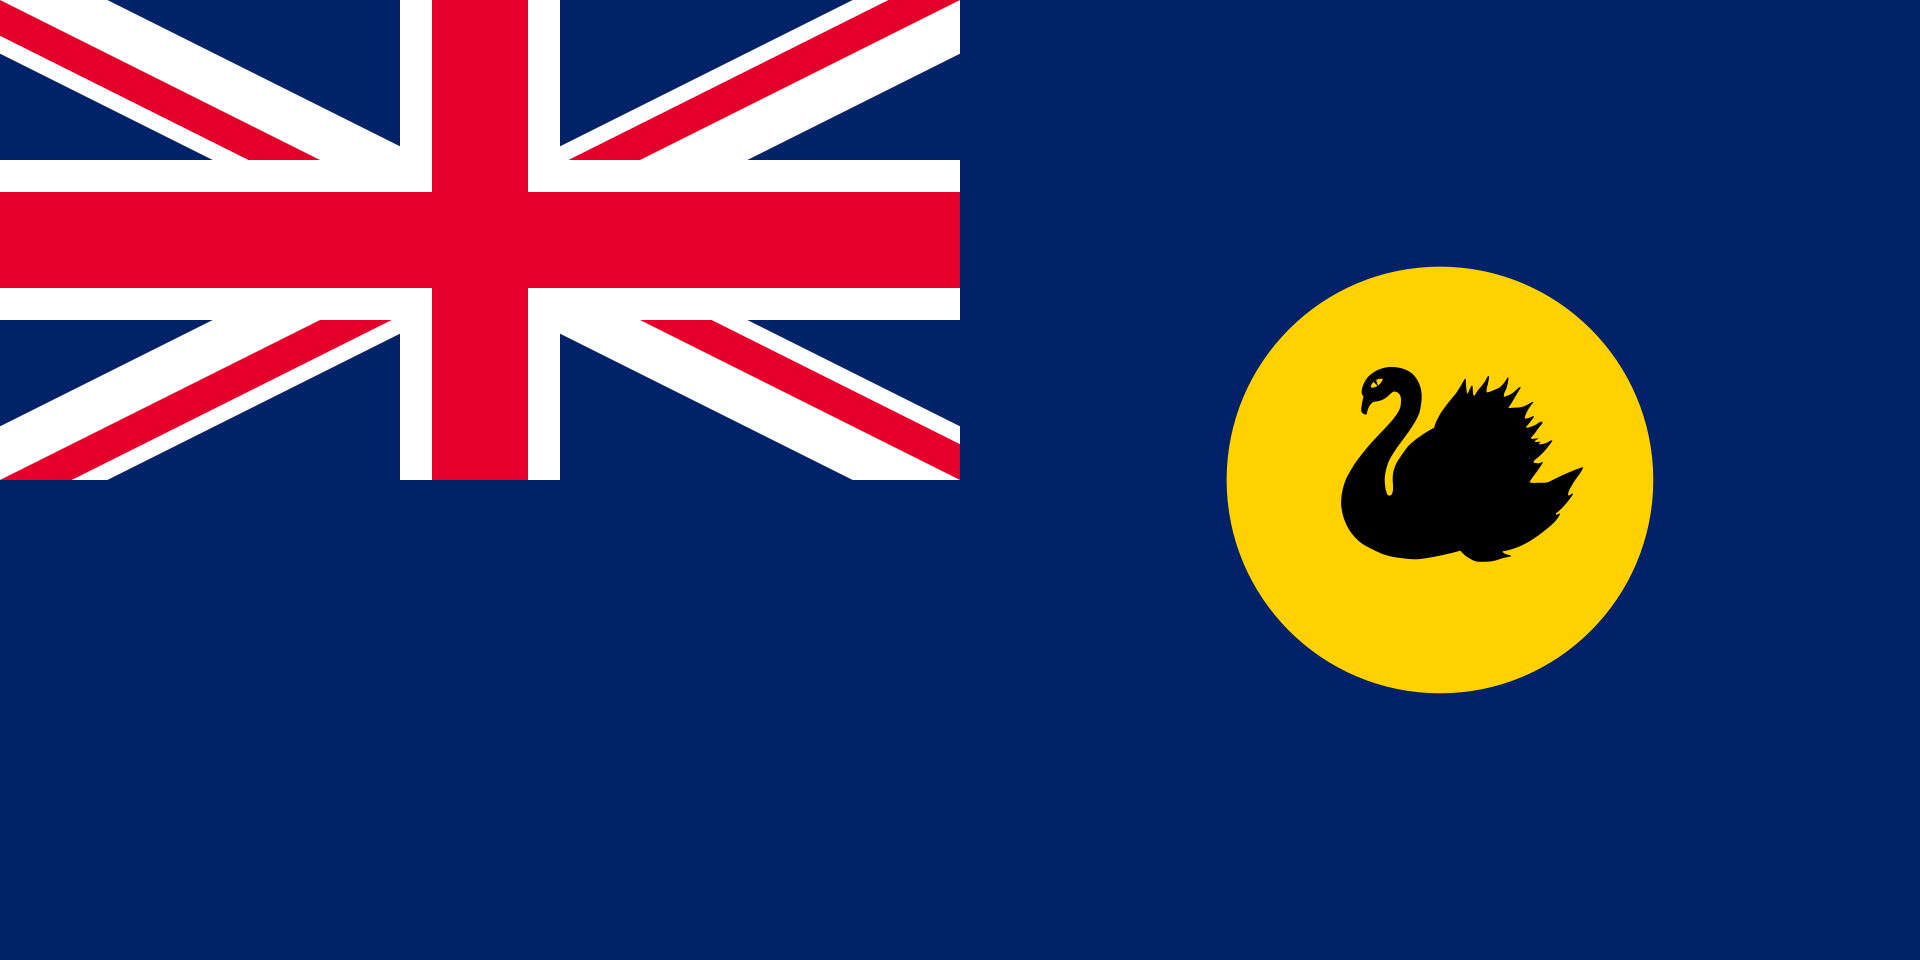 Western Australia Flag 2ft x 1ft